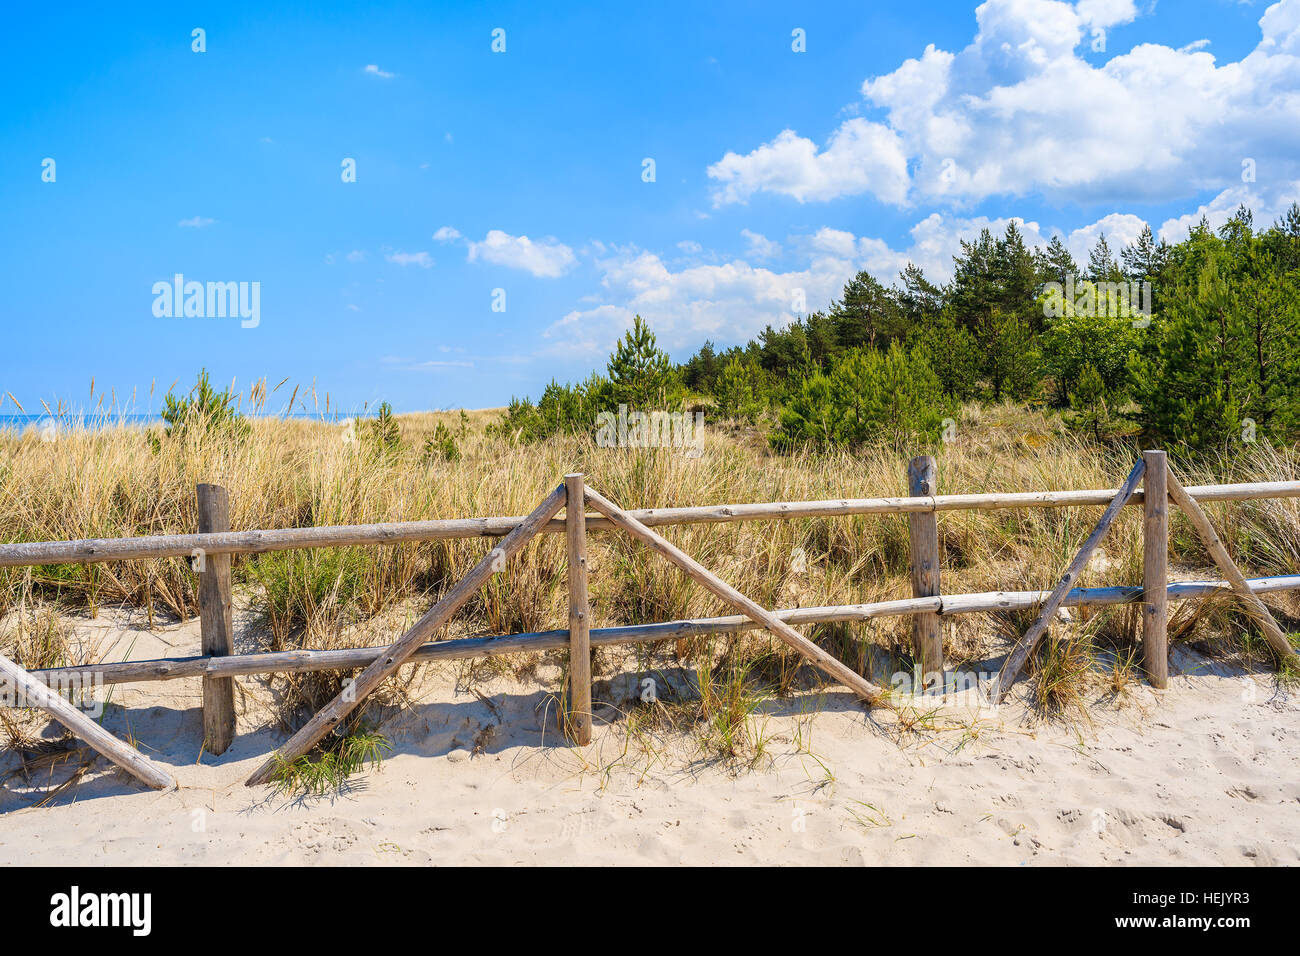 Clôture en bois sur dune de sable sur la côte de la mer Baltique, près de la plage, la Pologne Lubiatowo Banque D'Images